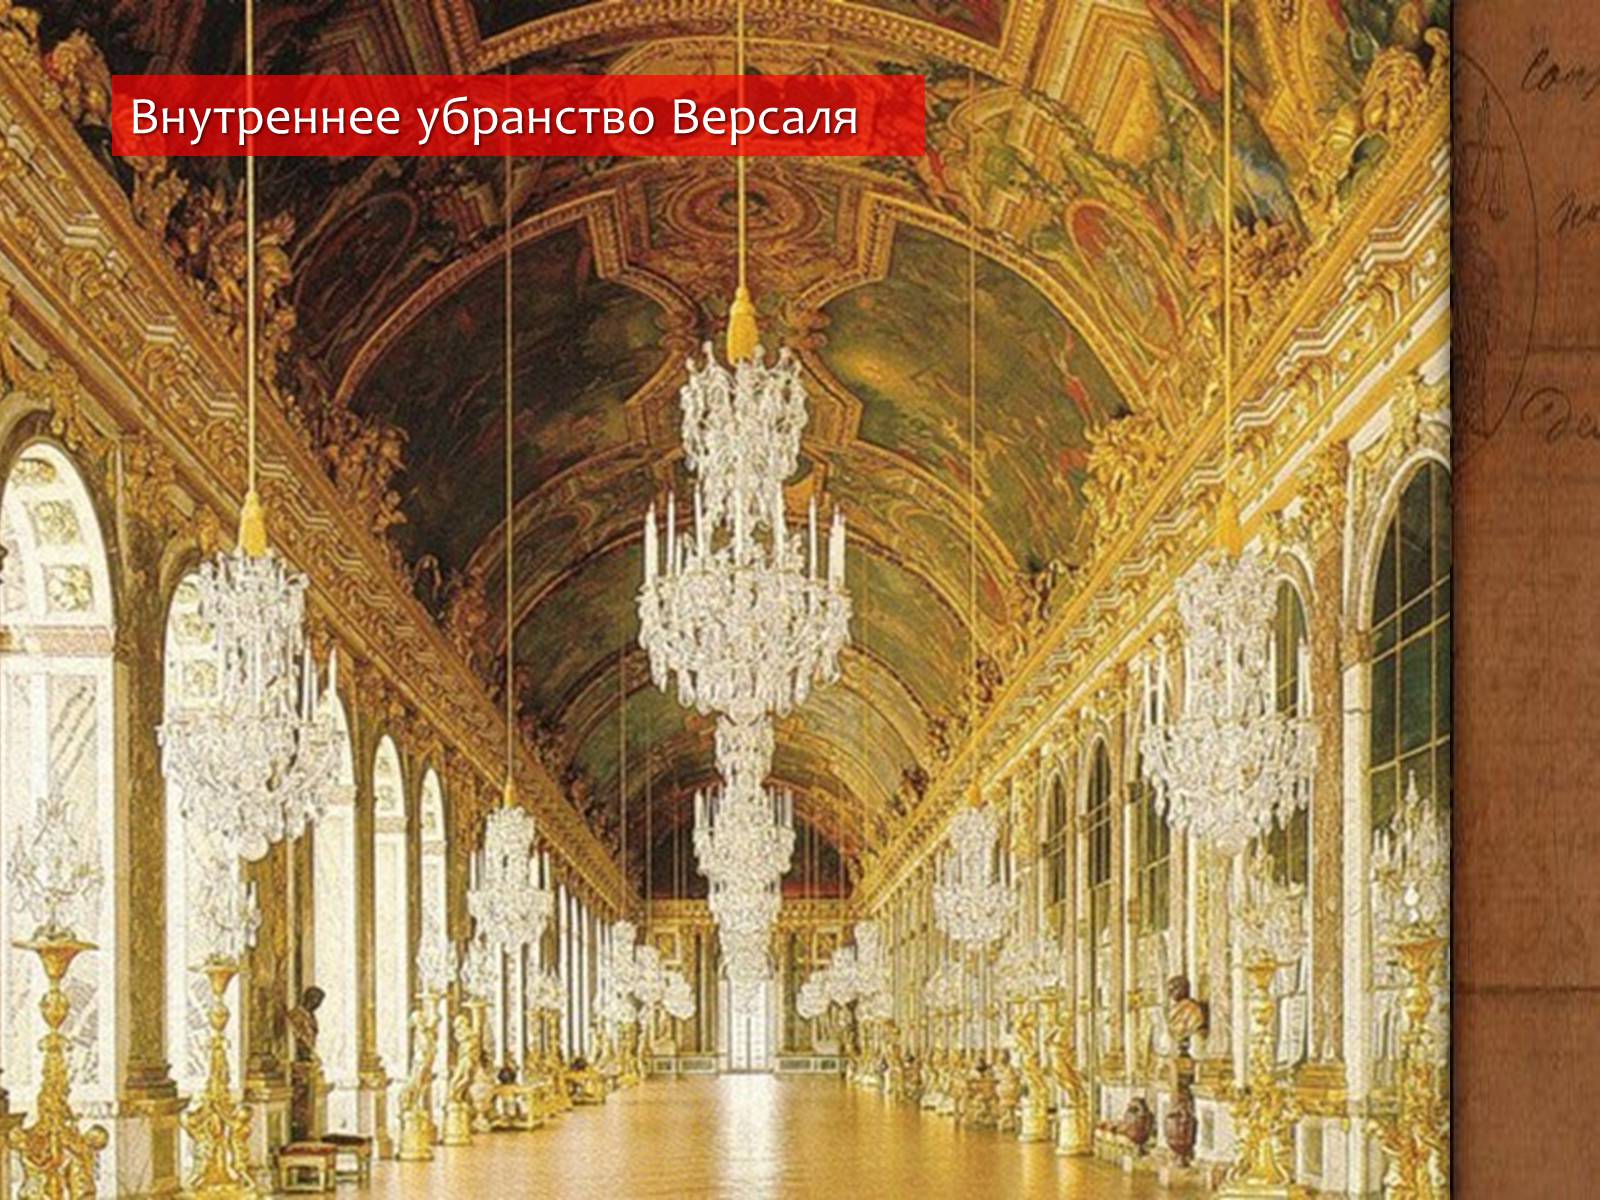 Версаль 14. Дворец Версаль Франция внутри. Версаль дворец Франция 18 век. Версальский дворец во Франции Людовик 14.